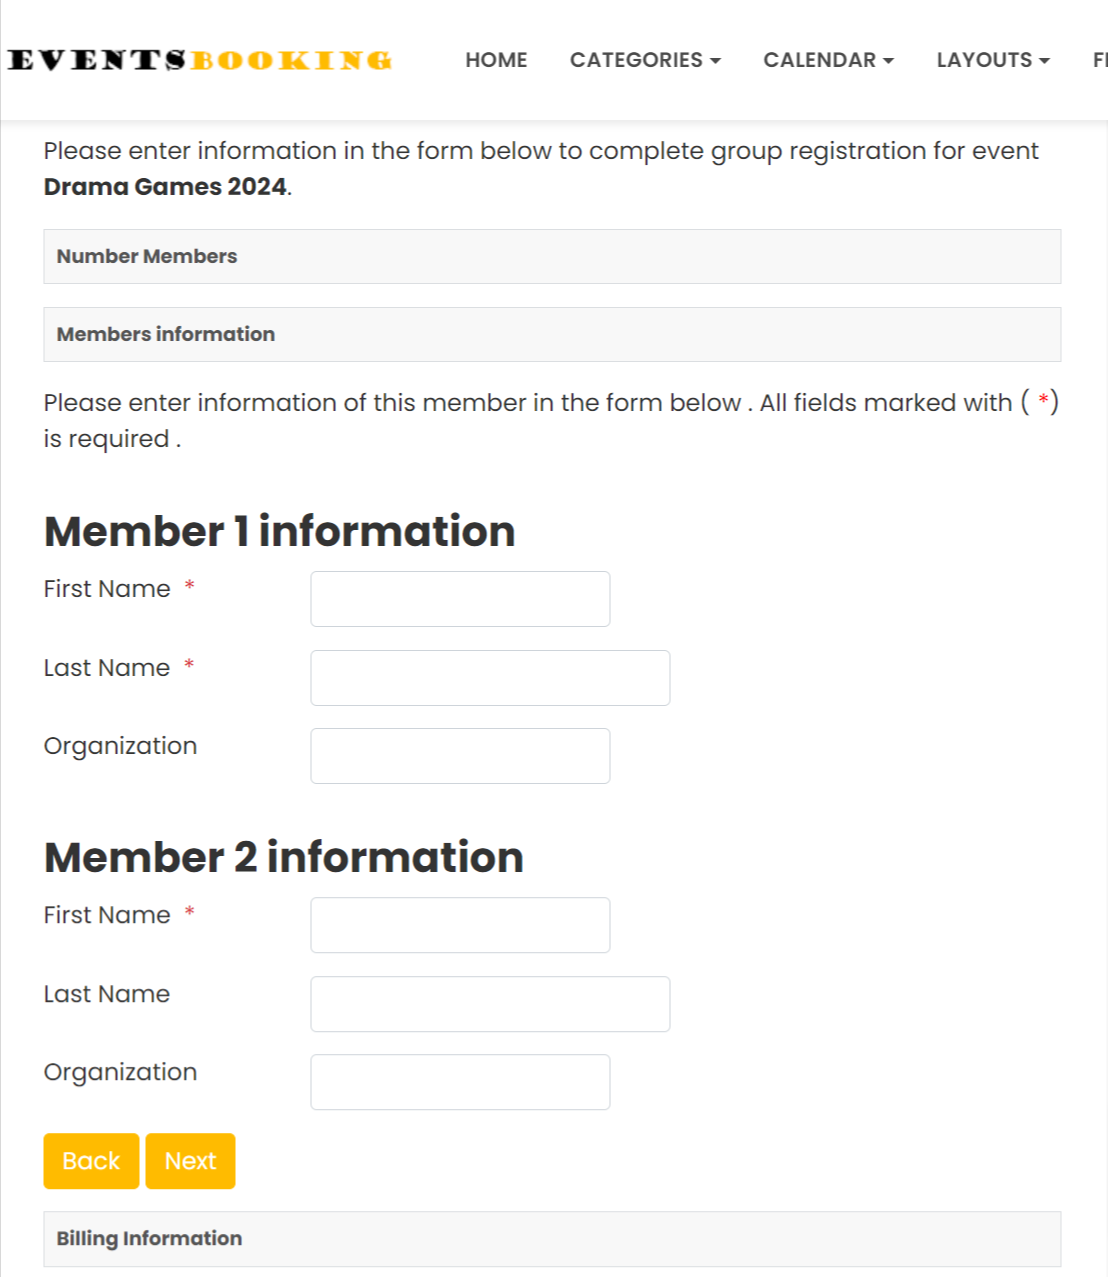 Group Registration Form